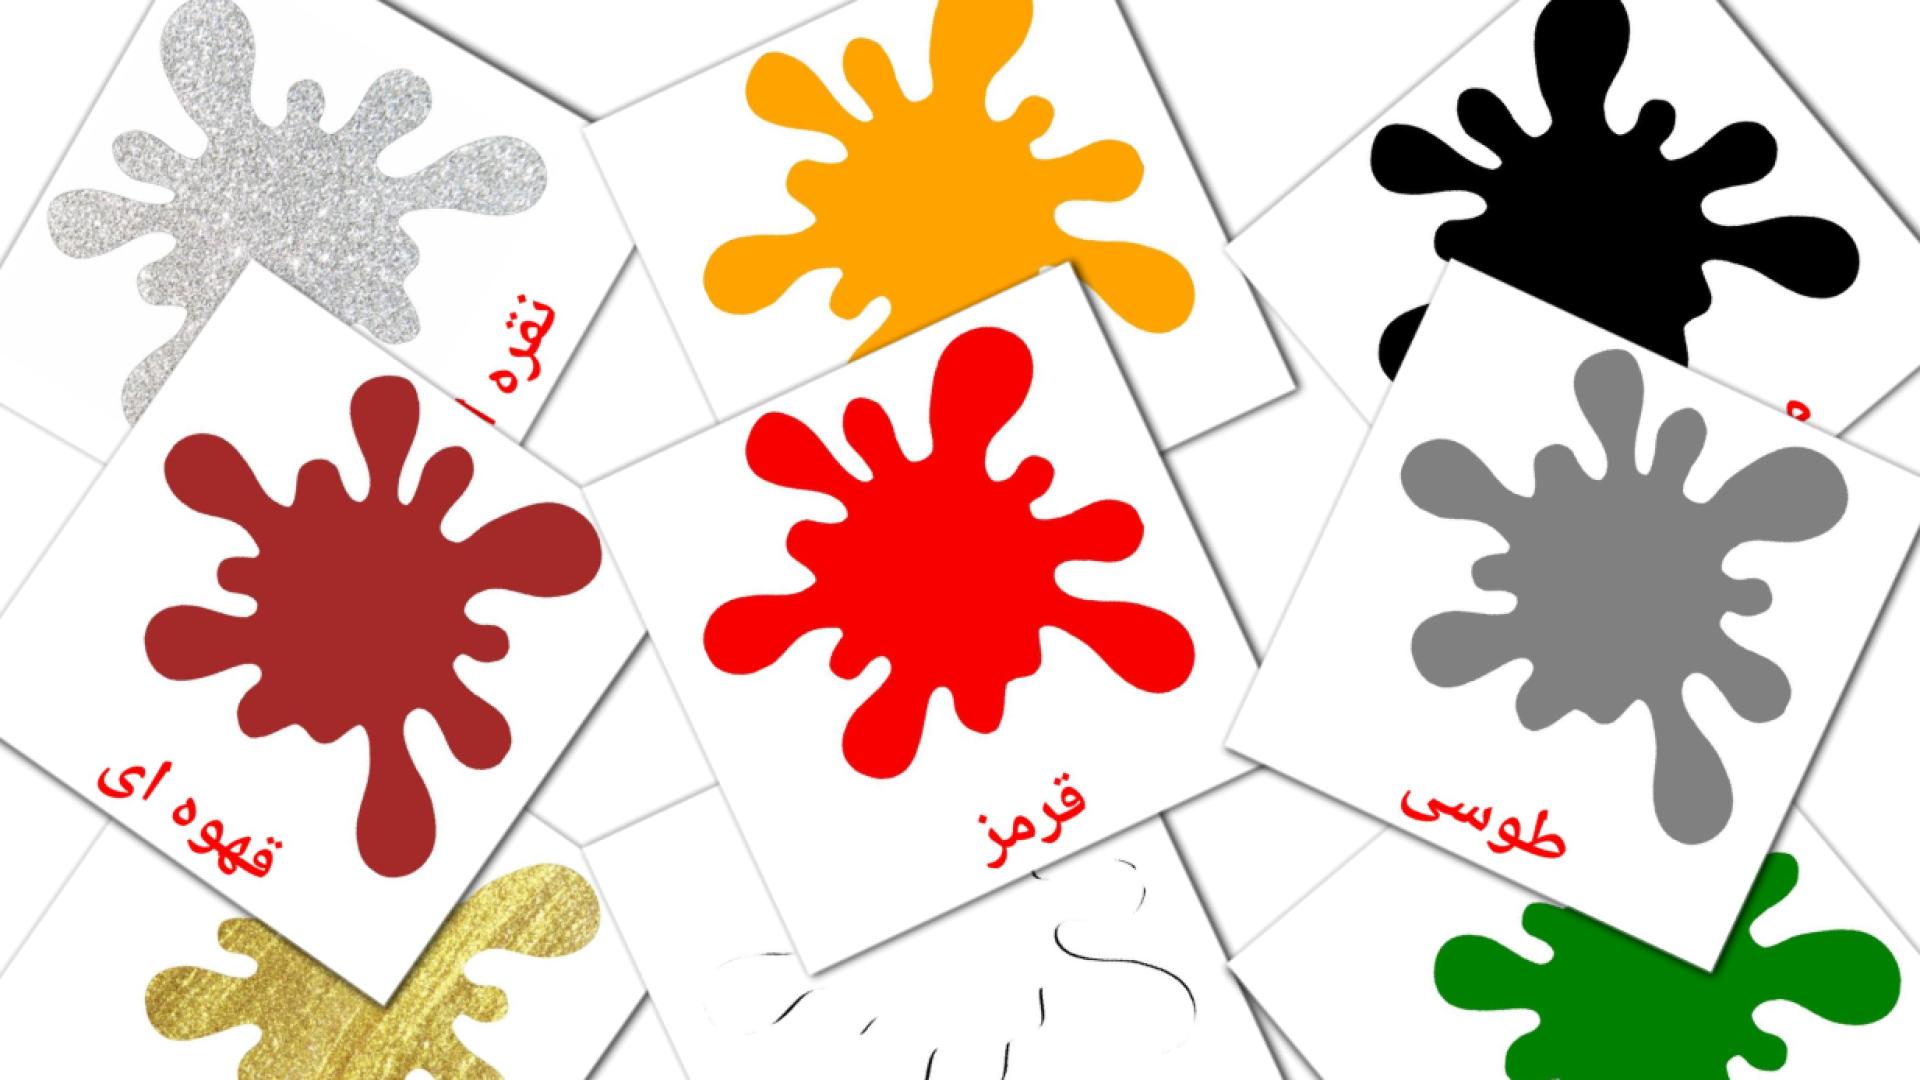 Persisch رنگ ها و اشکالe Vokabelkarteikarten